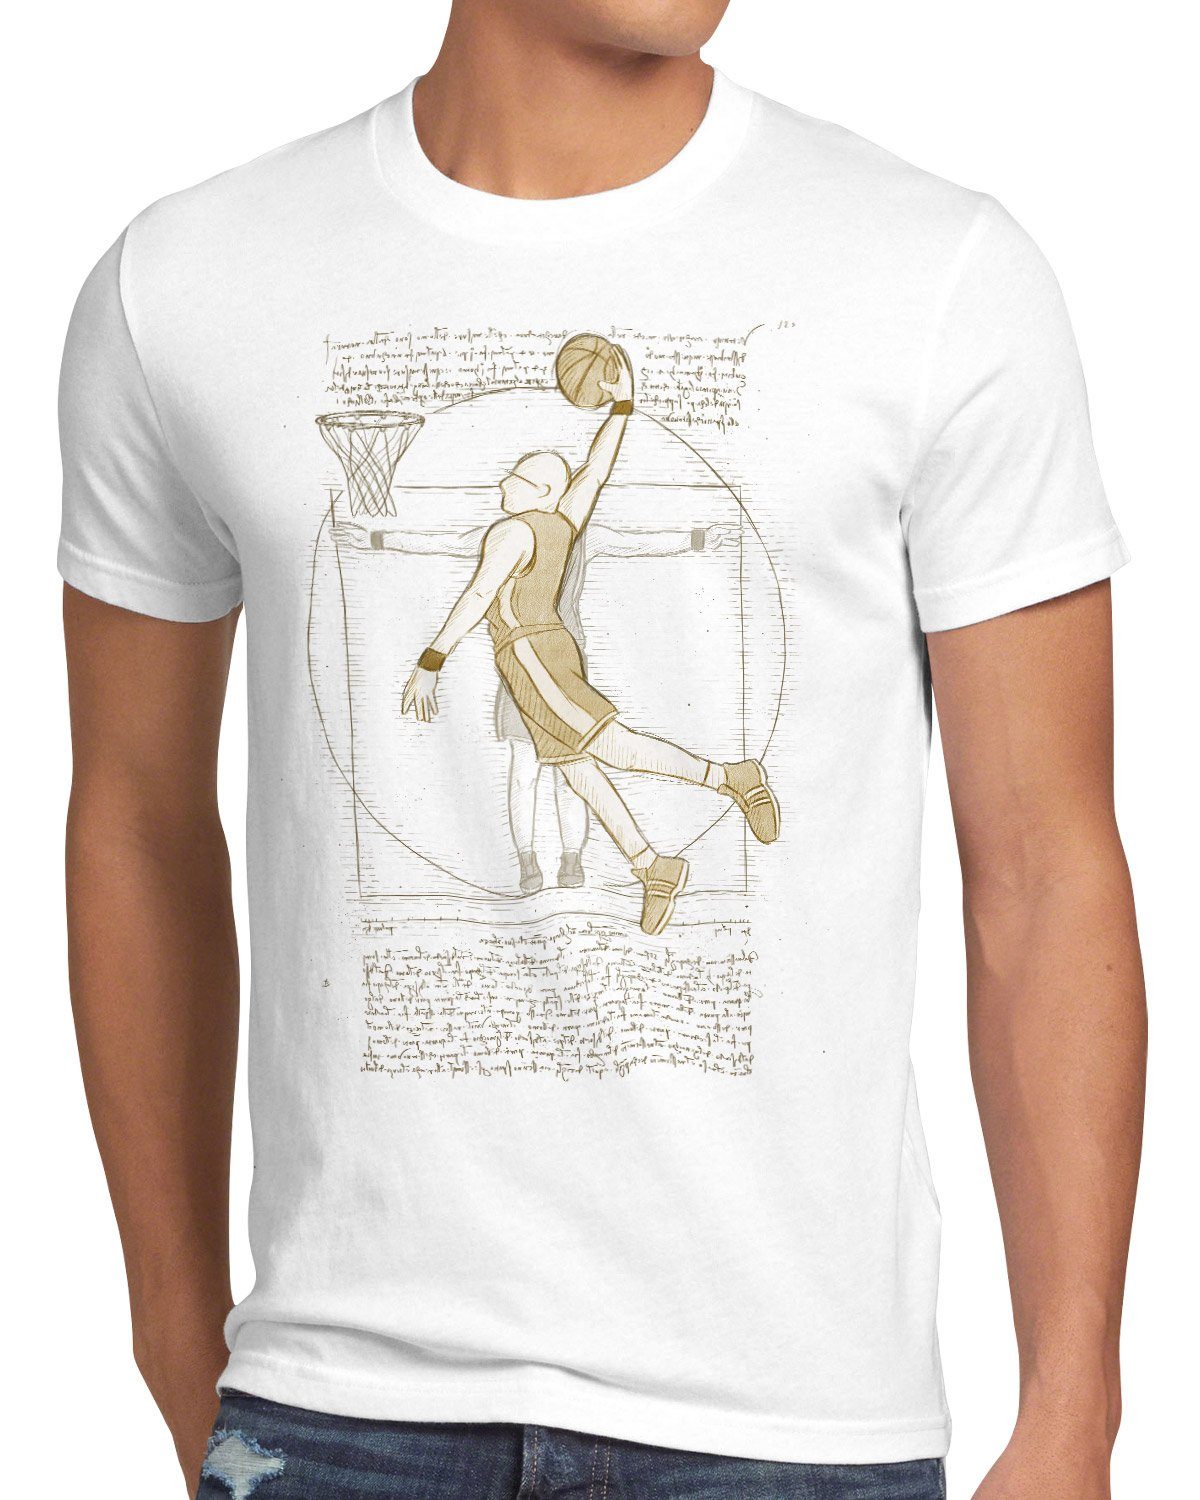 vinci ballsport Basketballspieler da Print-Shirt Vitruvianischer Herren style3 T-Shirt mensch weiß